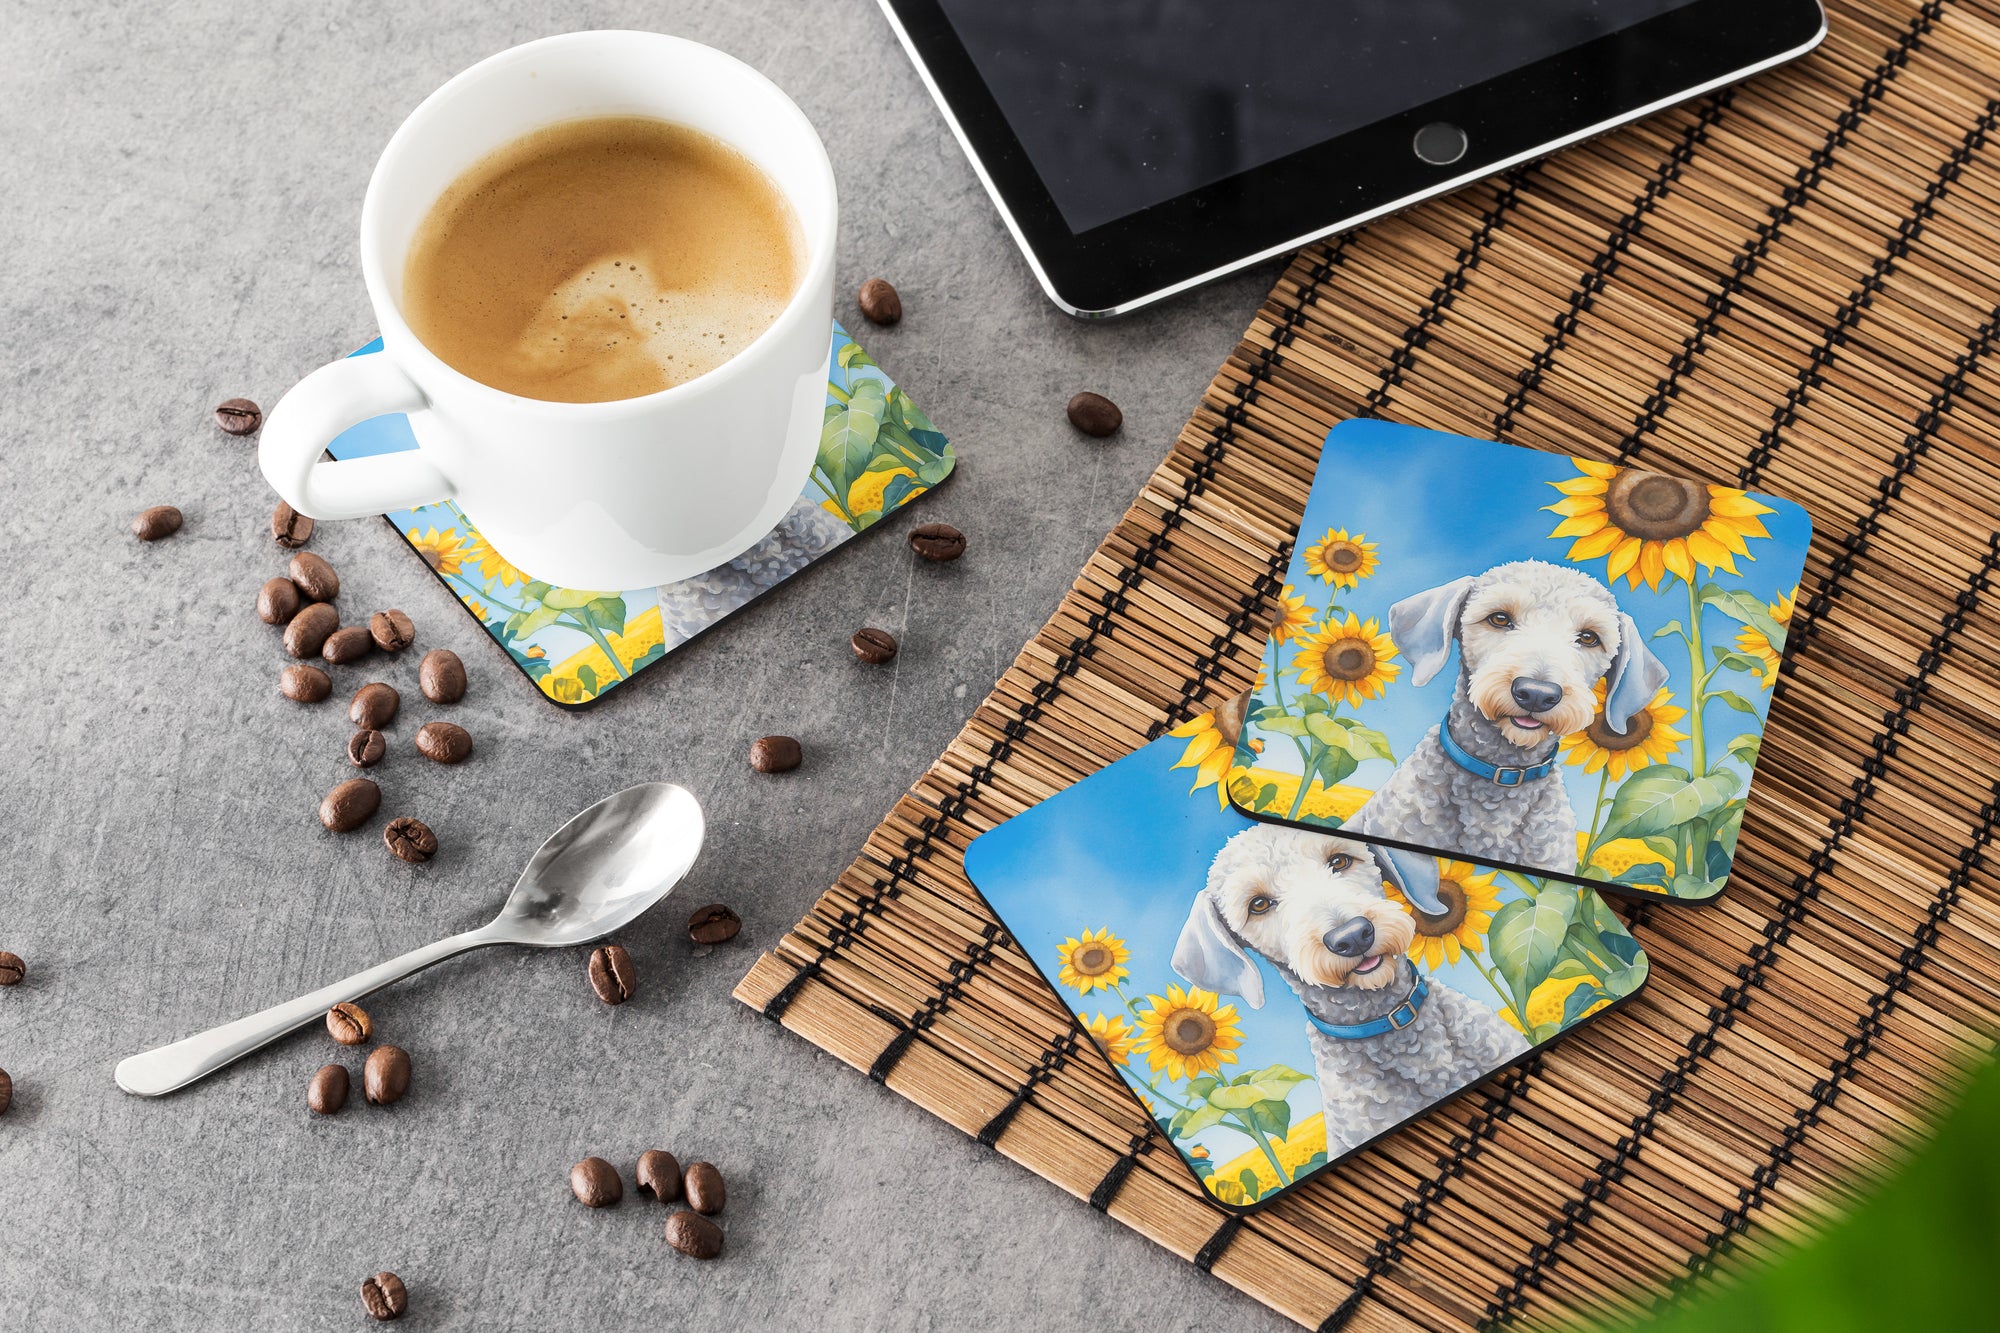 Bedlington Terrier in Sunflowers Foam Coasters